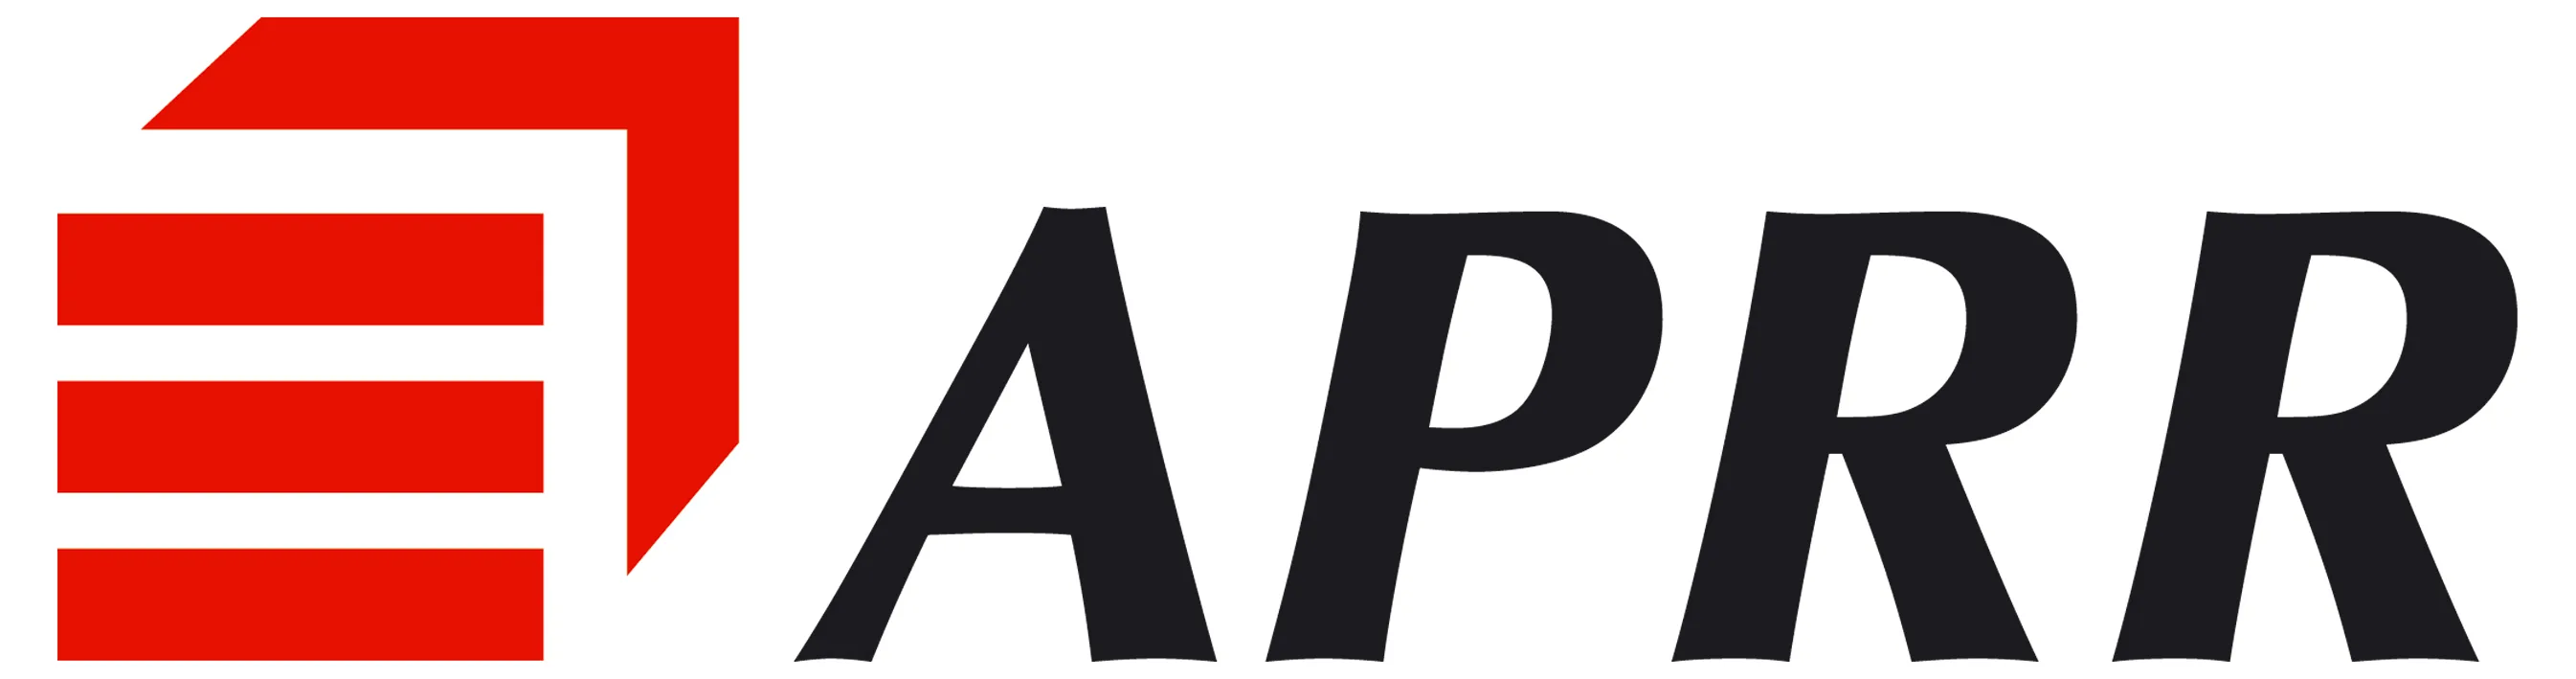 Voici le logo de la marque APRR qui représente son identité graphique.